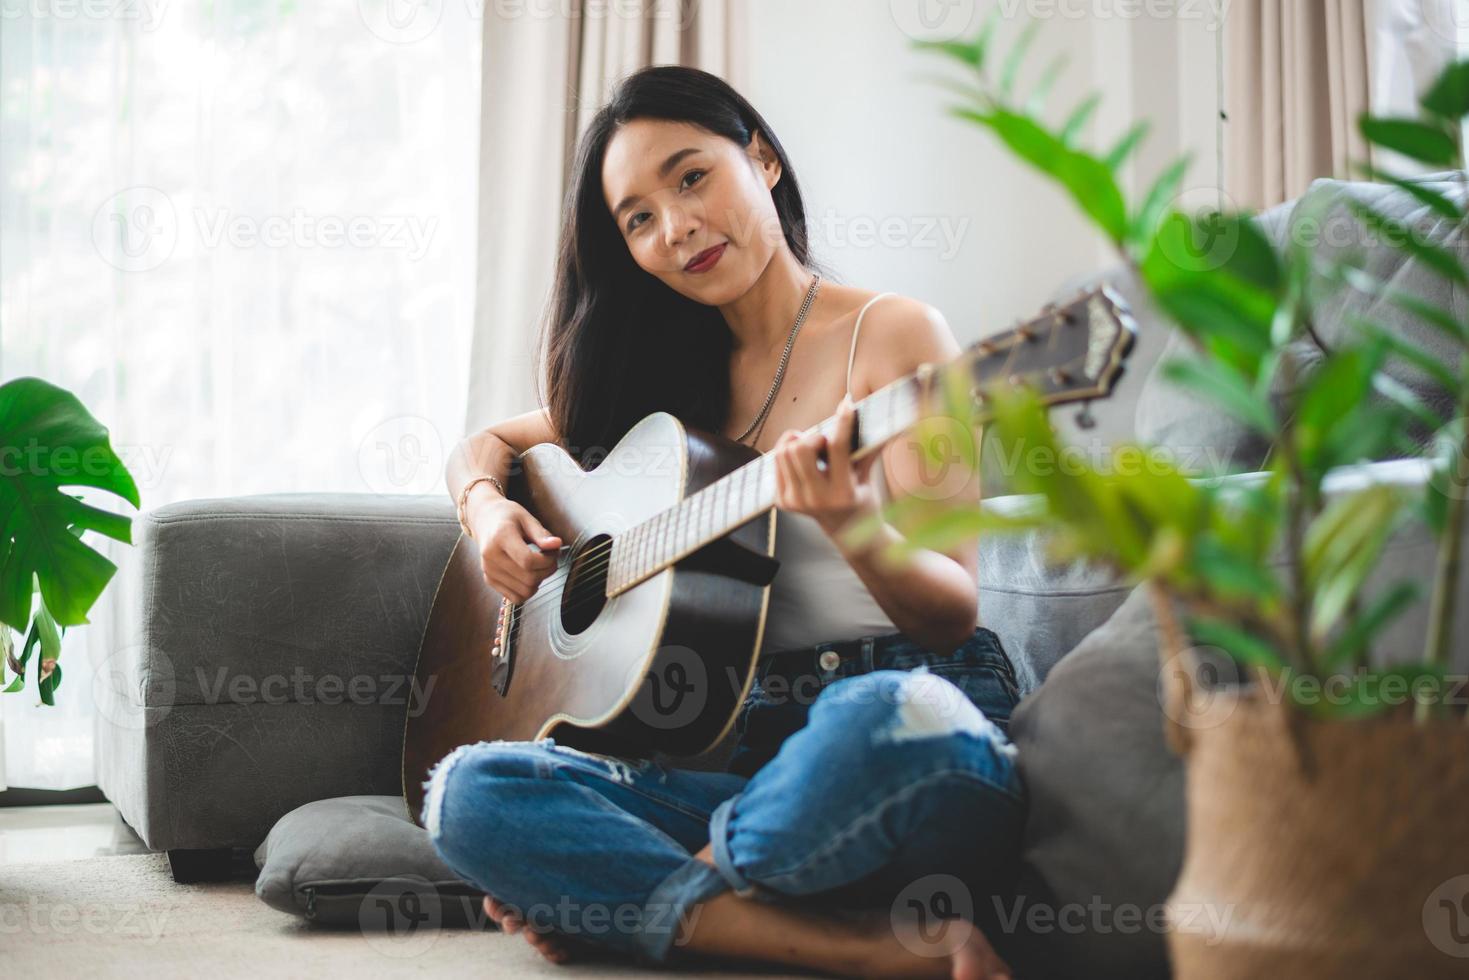 femme asiatique jouant de la musique à la guitare à la maison, jeune femme guitariste musicienne style de vie avec instrument d'art acoustique assis pour jouer et chanter une chanson faisant du son dans un passe-temps dans la chambre de la maison photo